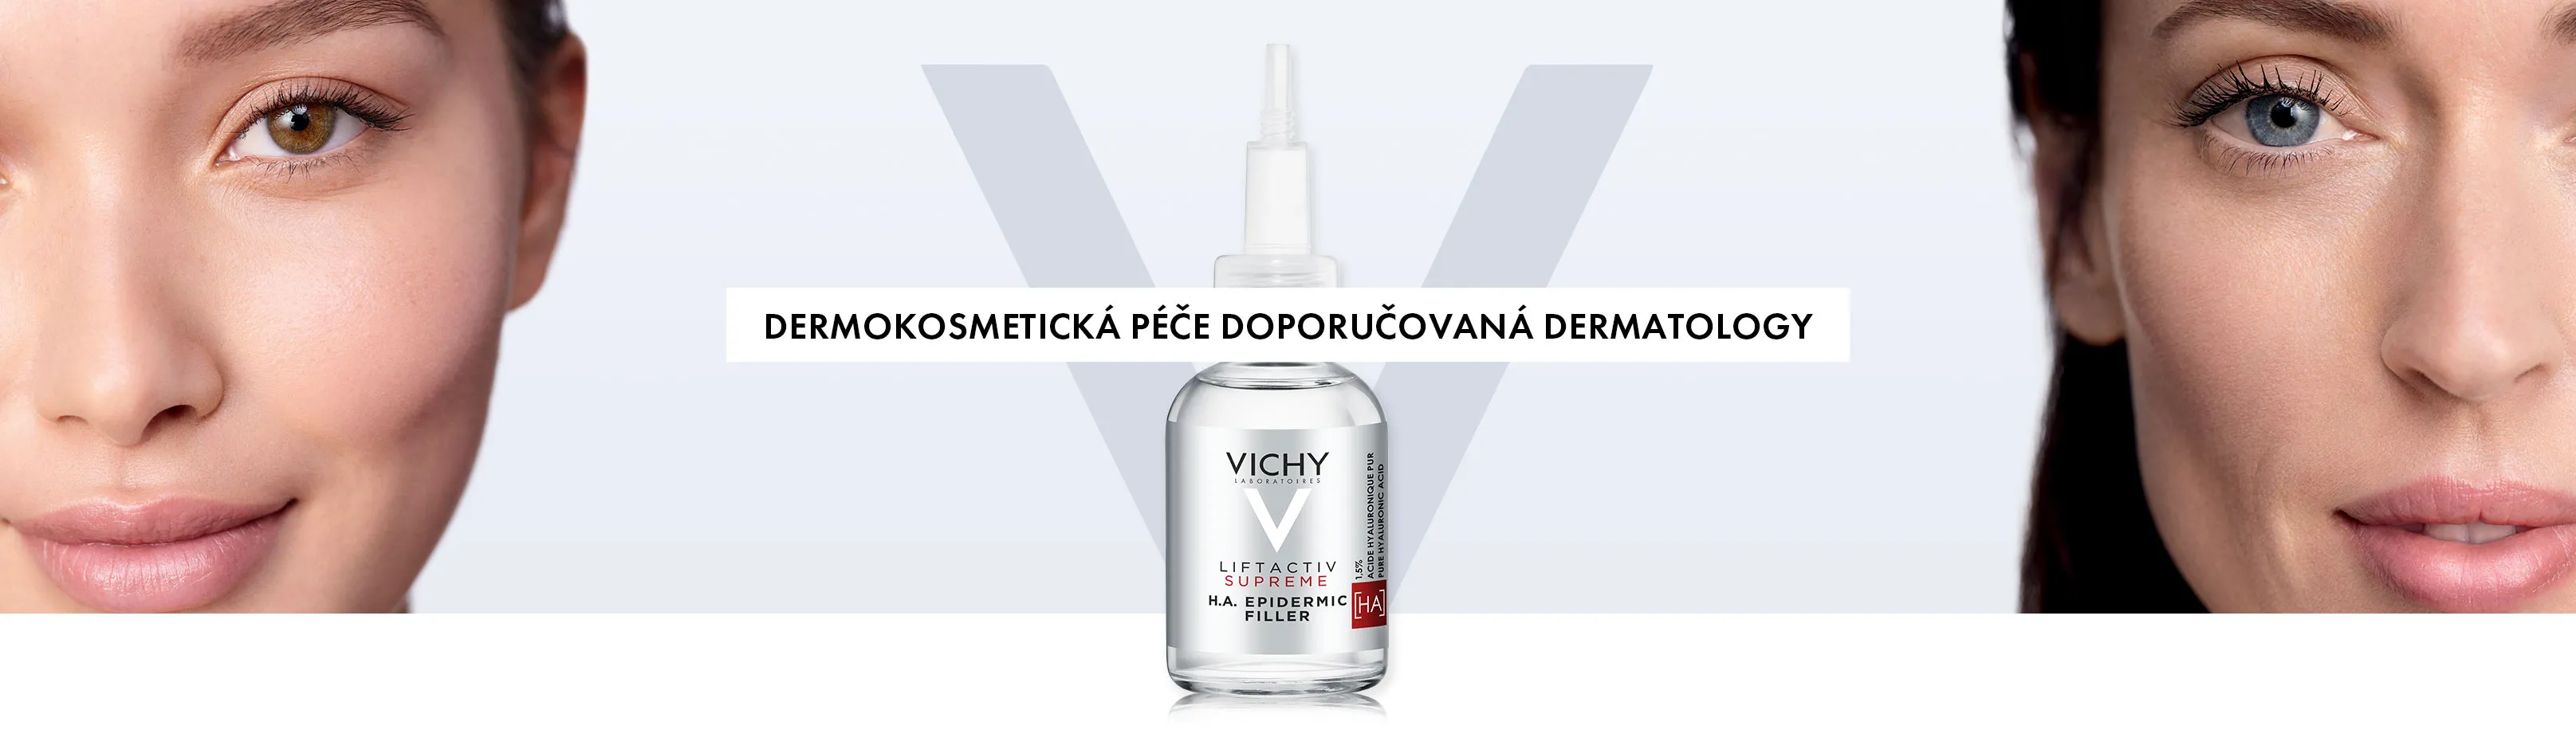 Vichy - dermokosmetická péče doporučovaná dermatology